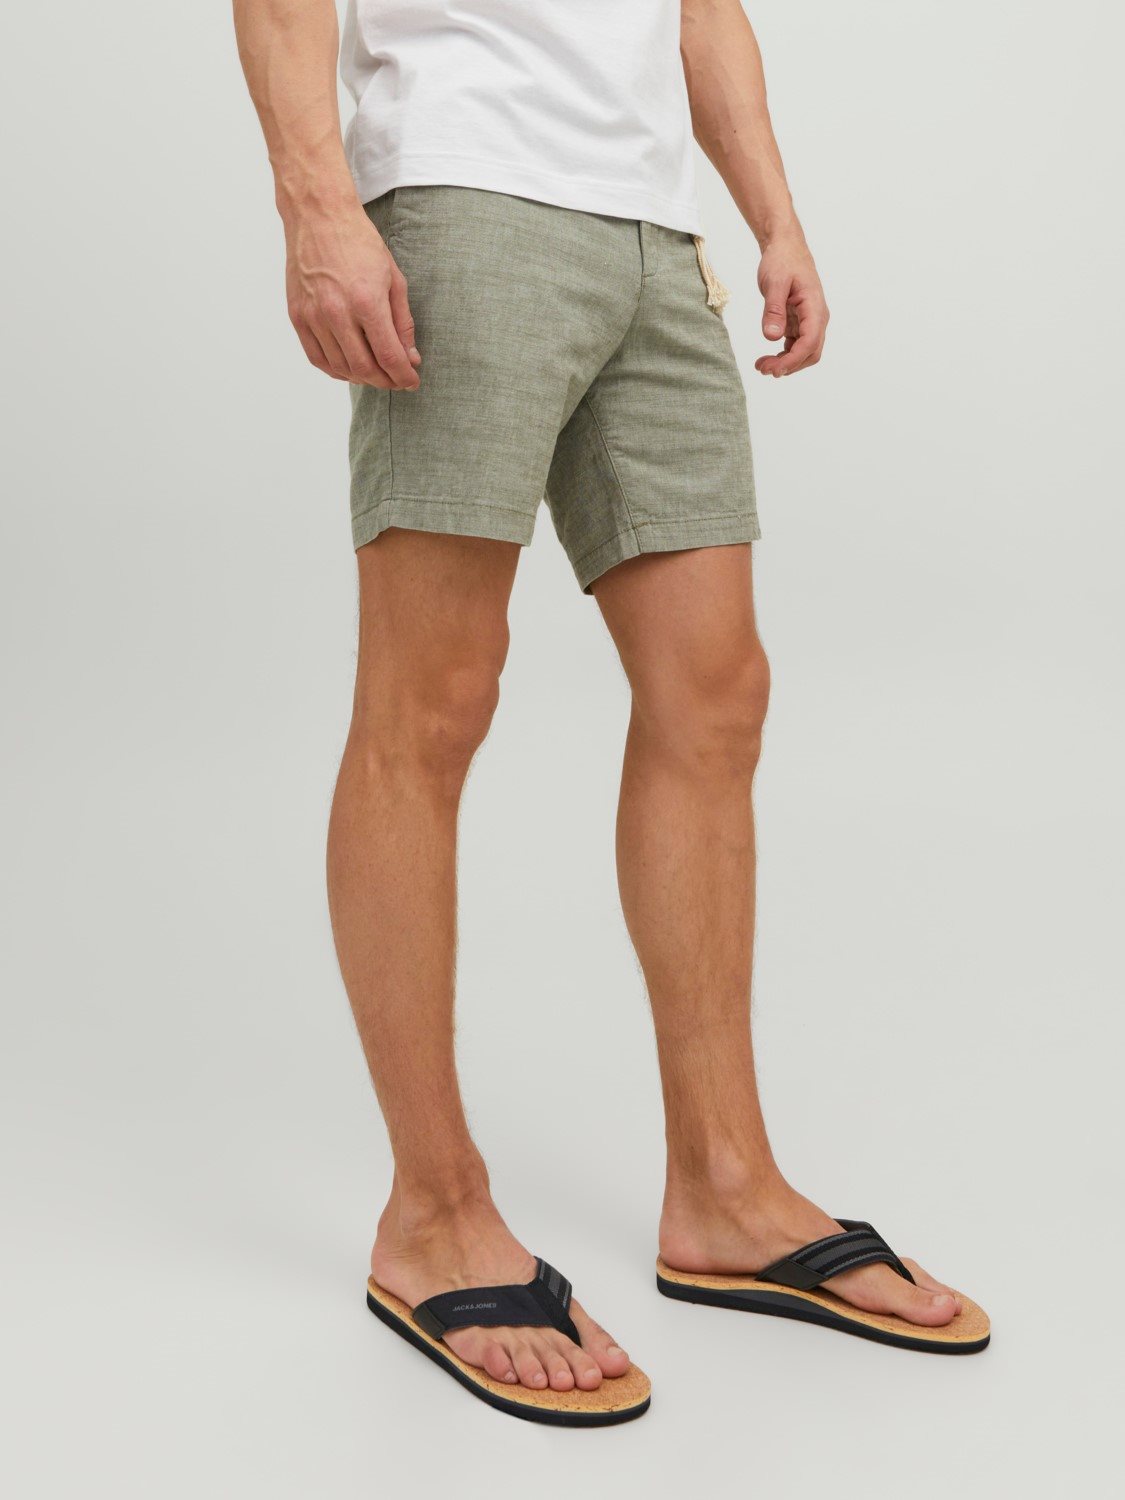 JPSTCove Linen Shorts